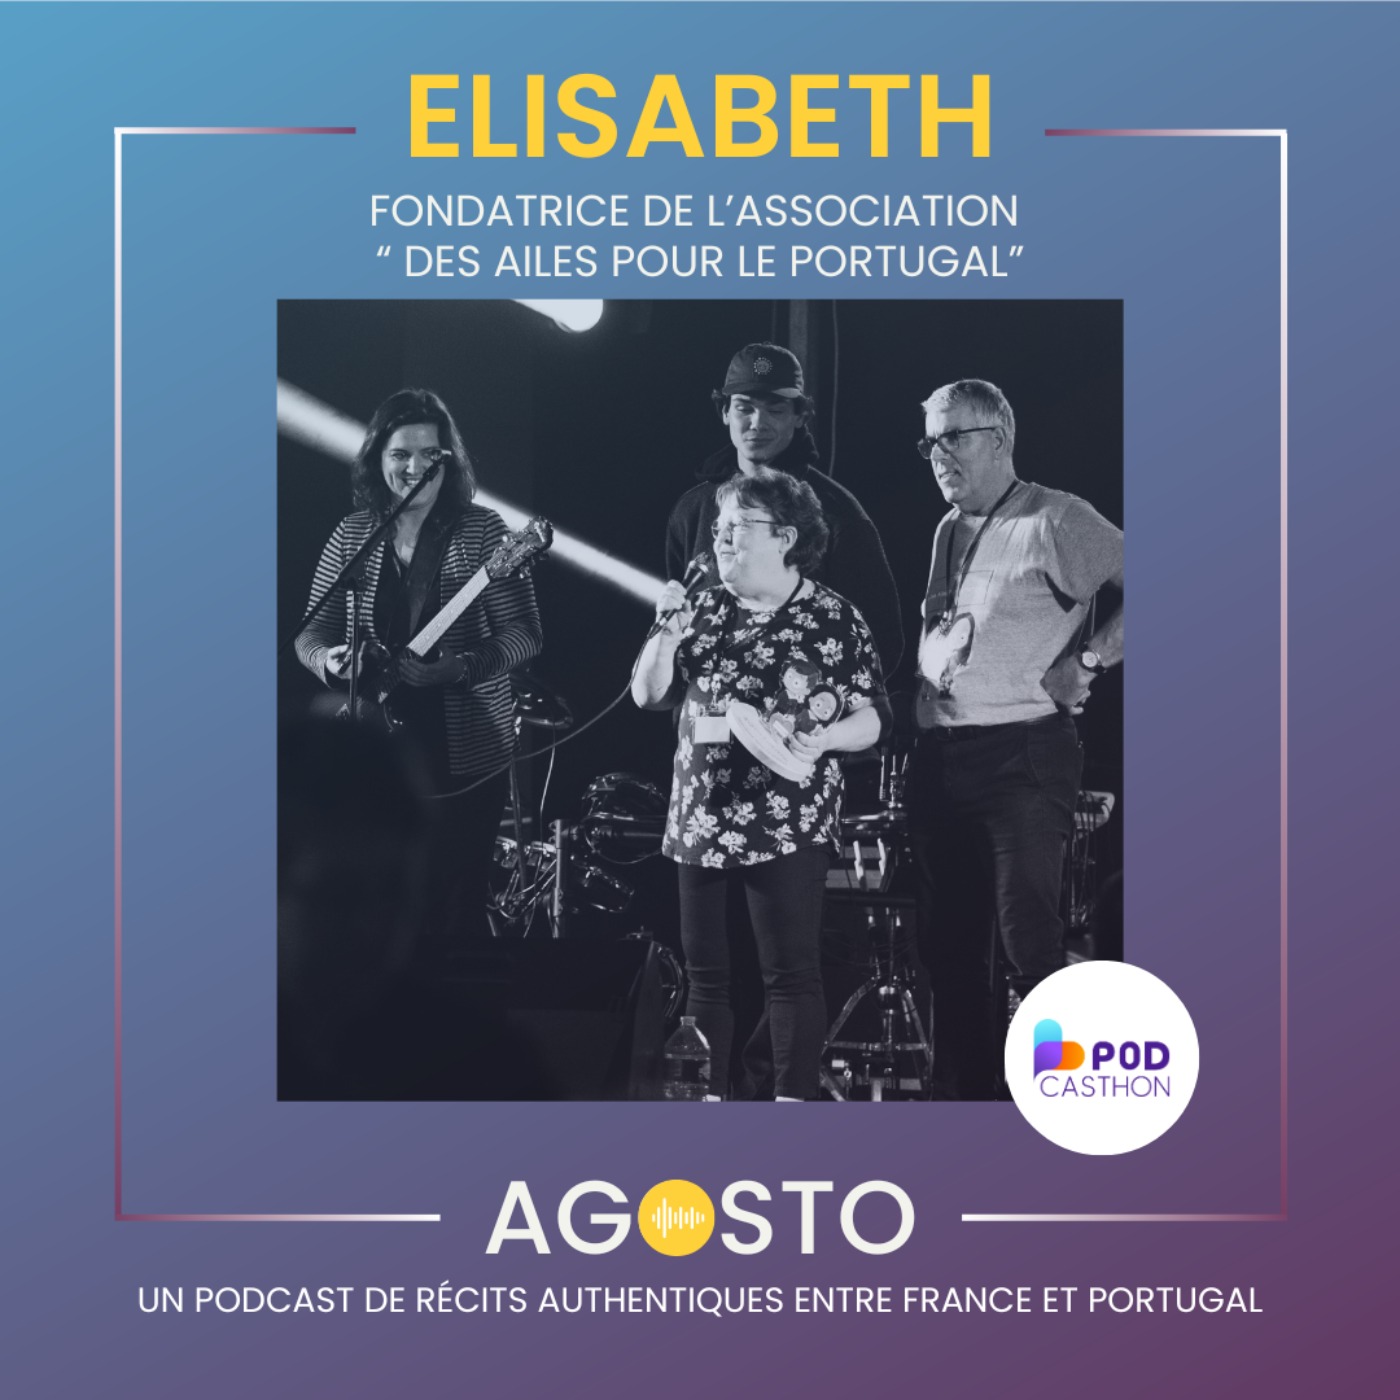 Elisabeth, fondatrice de l'association Des Ailes pour le Portugal